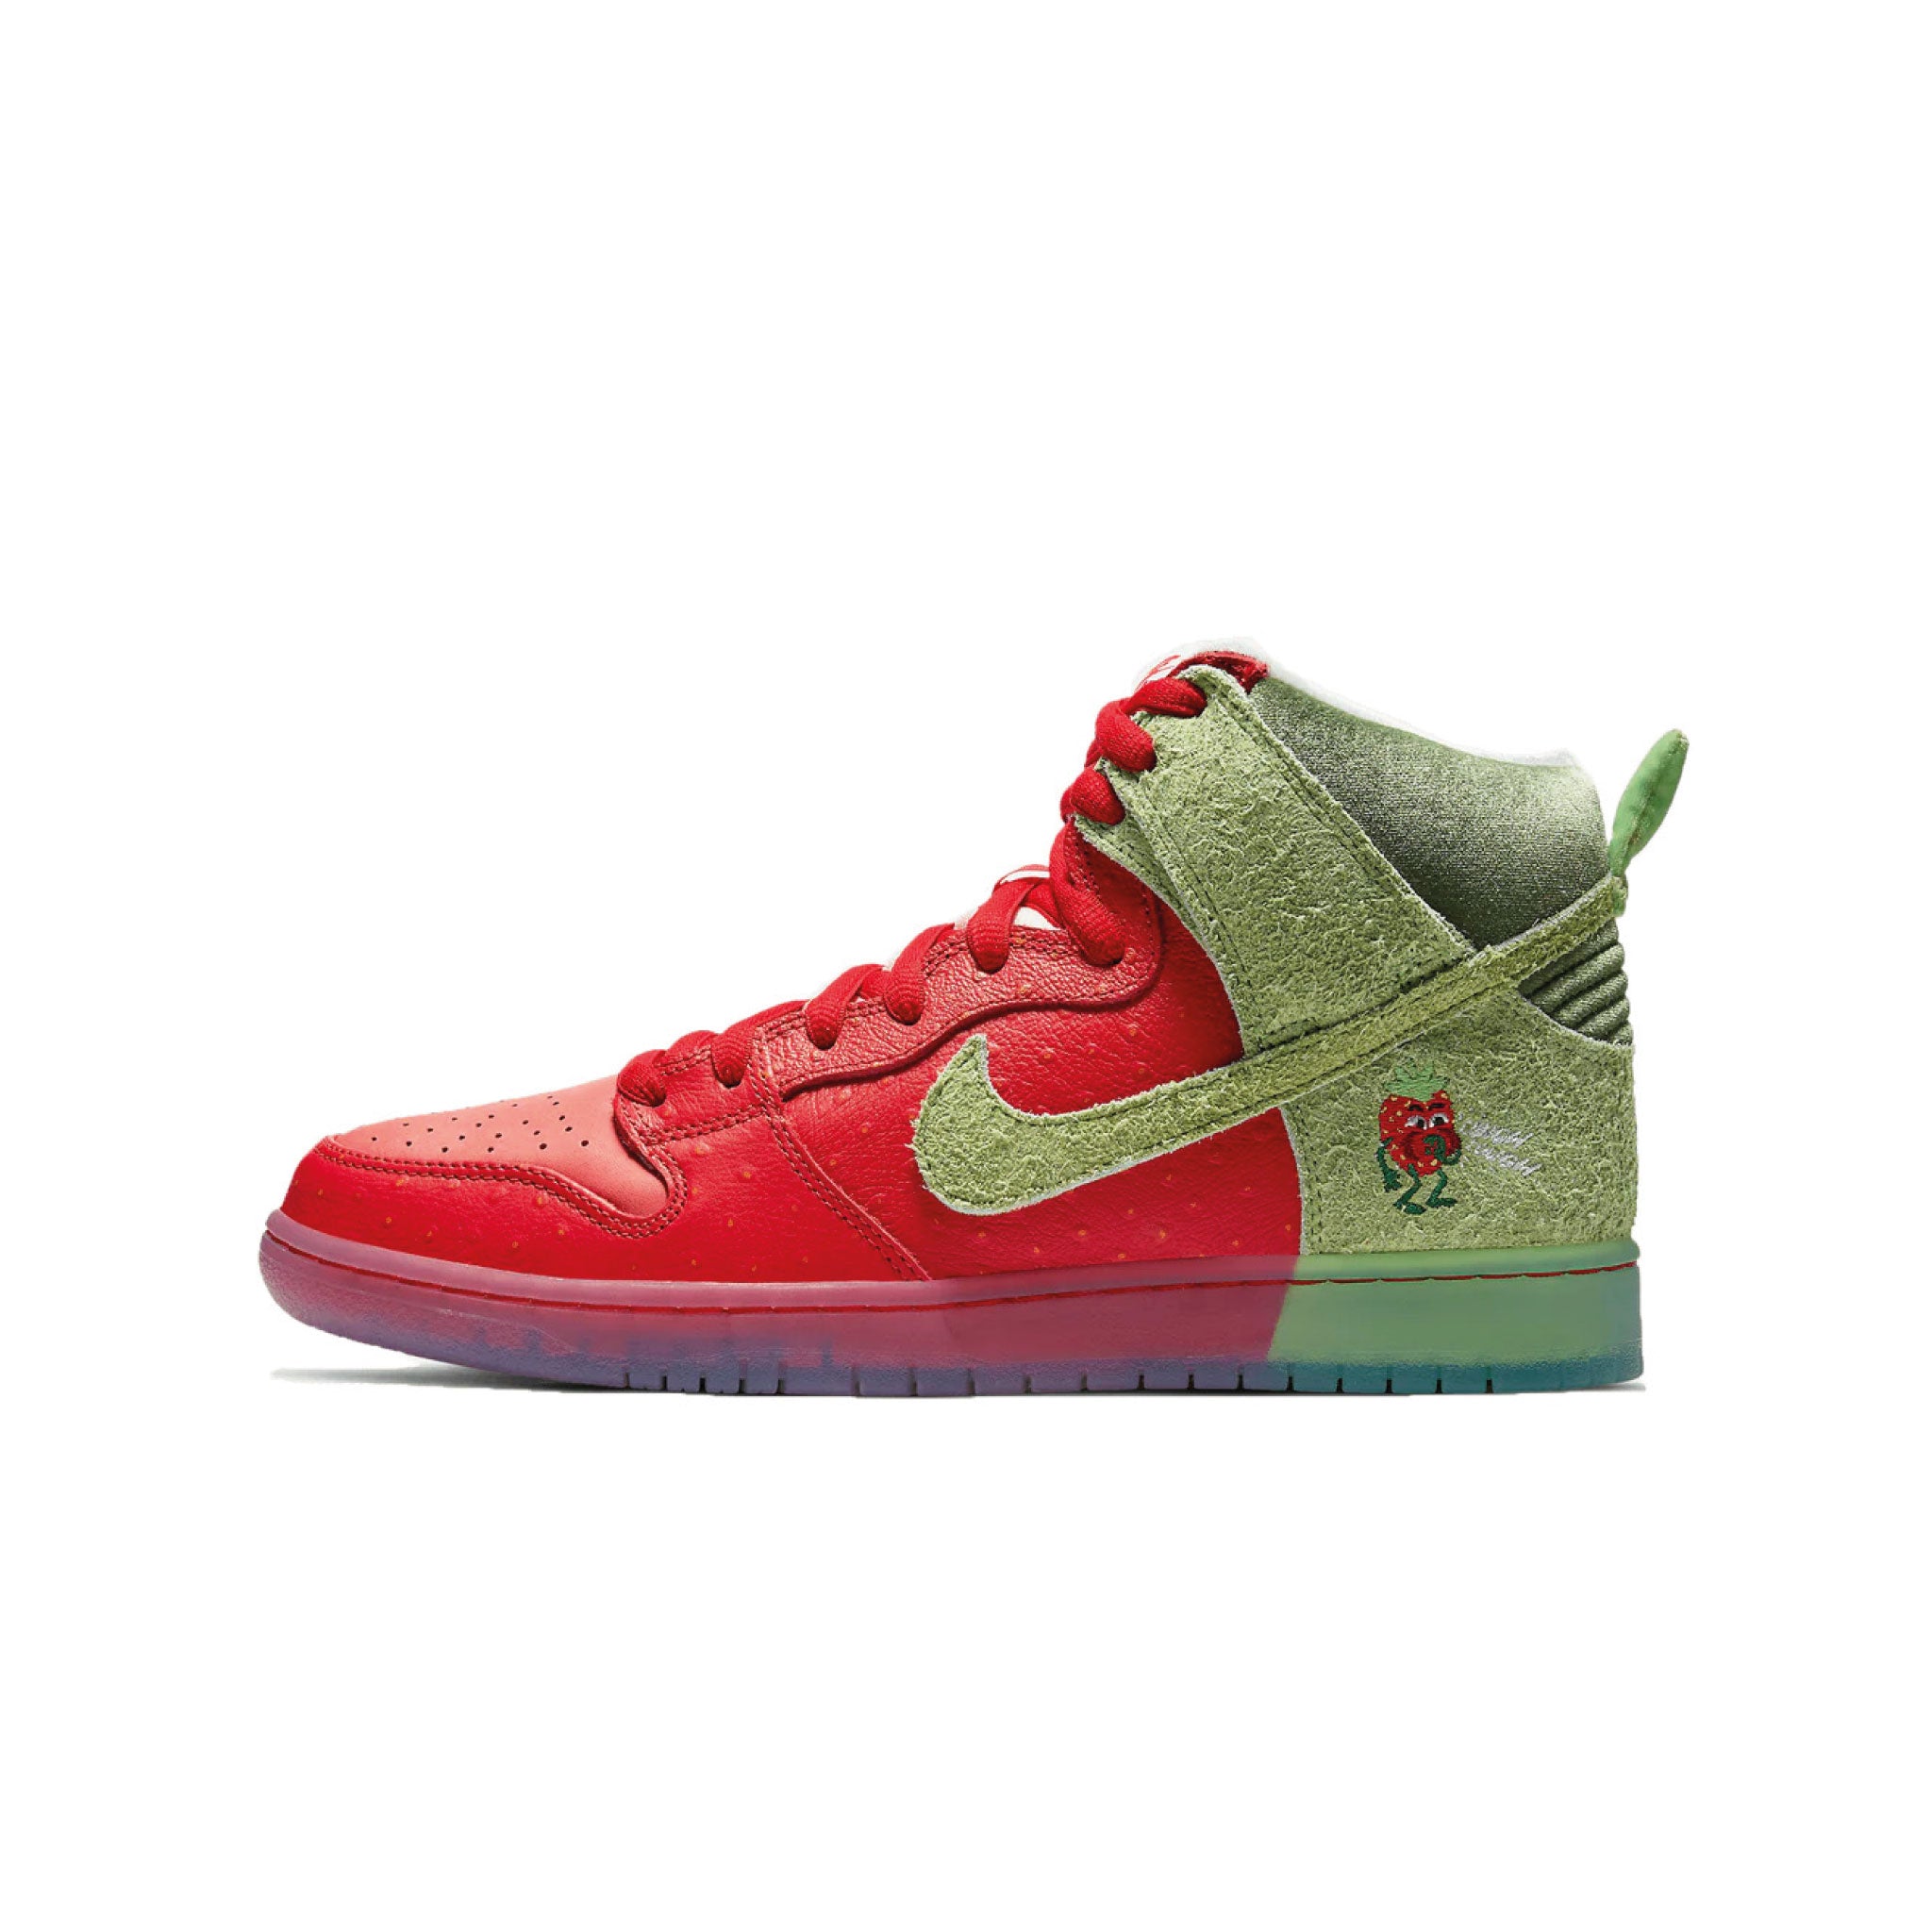 Nike SB Dunk High 'Strawberry Cough' – OG Market